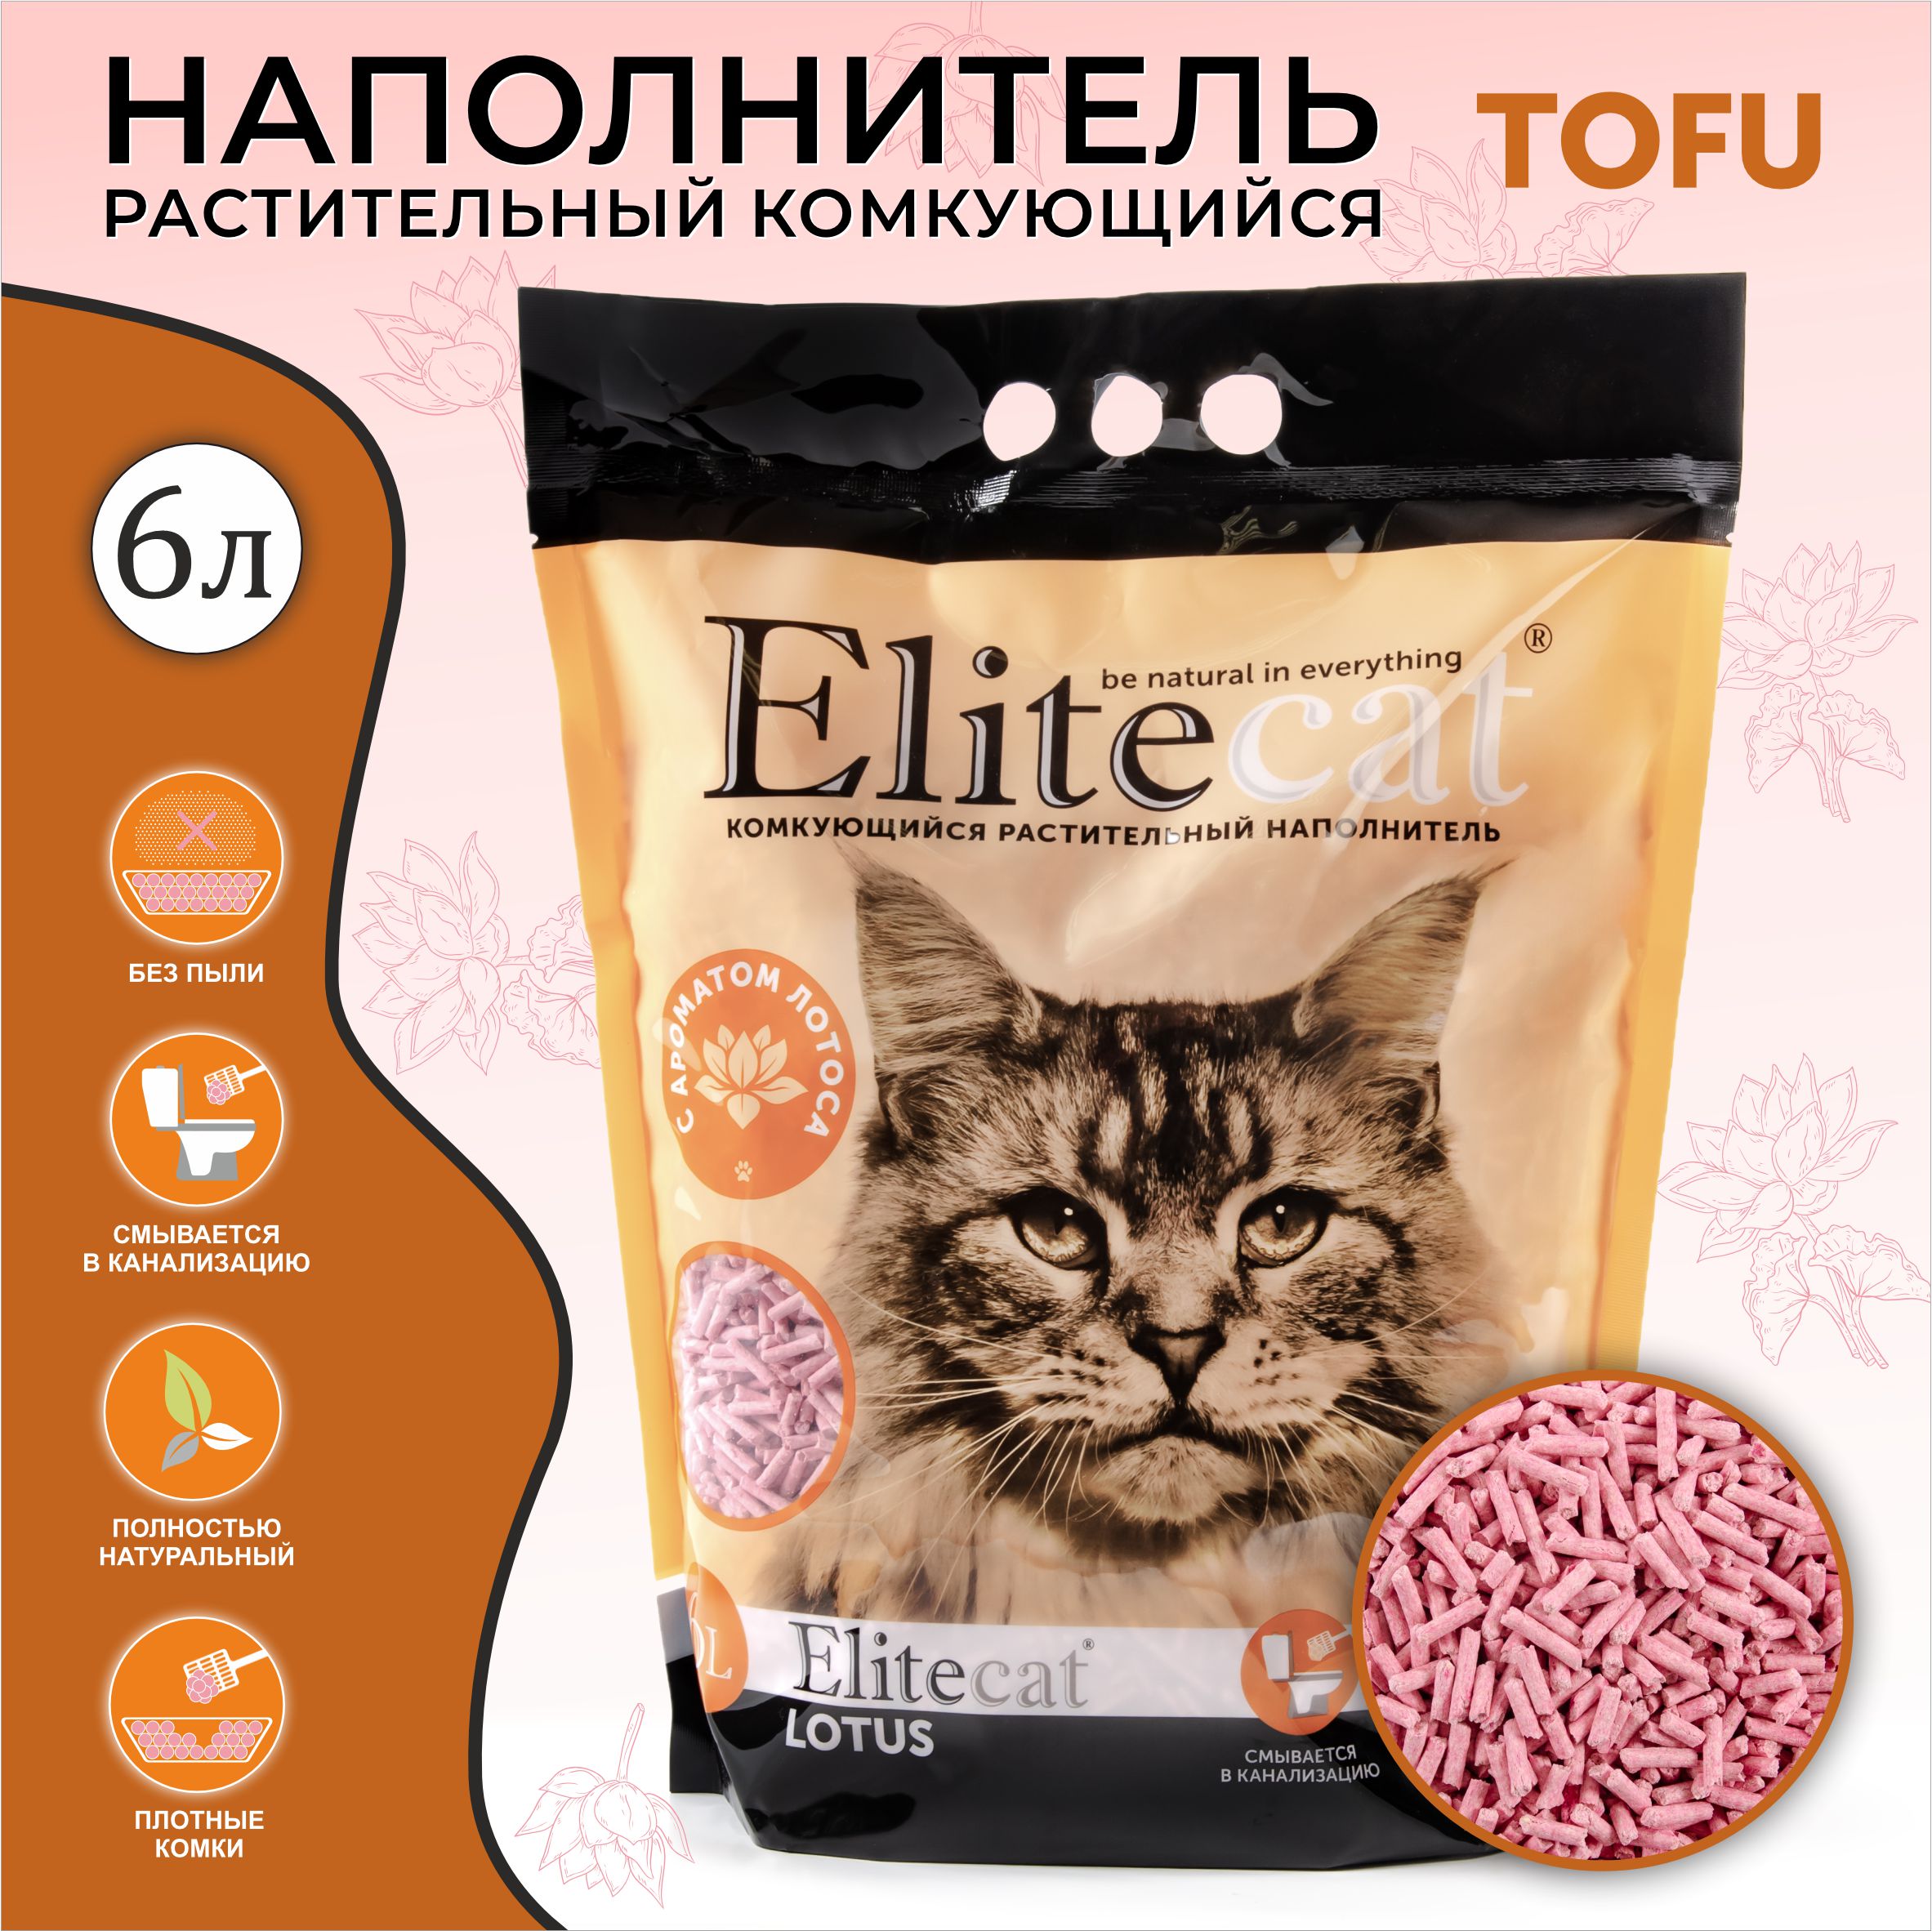 Наполнитель для кошачьих туалетов ELITECAT Tofu Lotus, растительный, 6 л, 2,7 кг